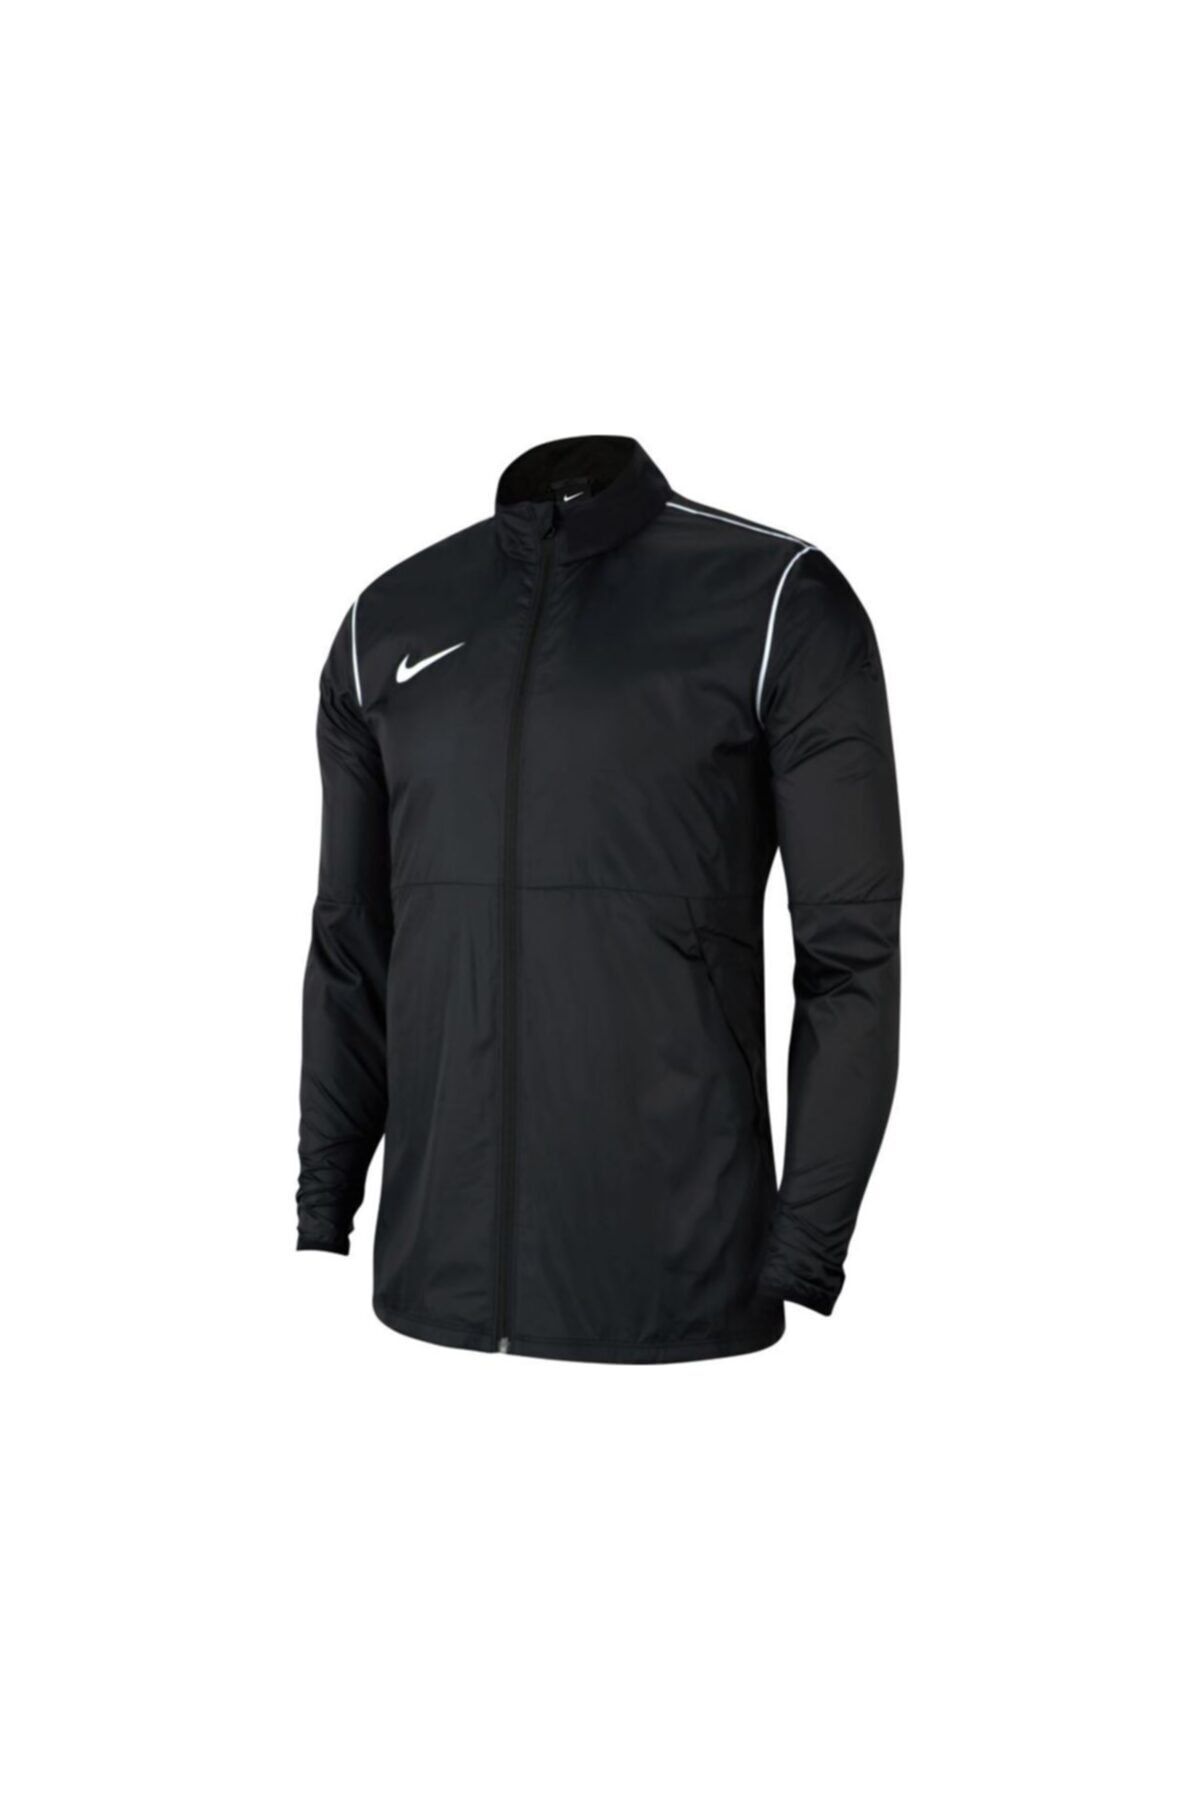 Nike Erkek Siyah Futbol Ceket Jkt Bv6881-010